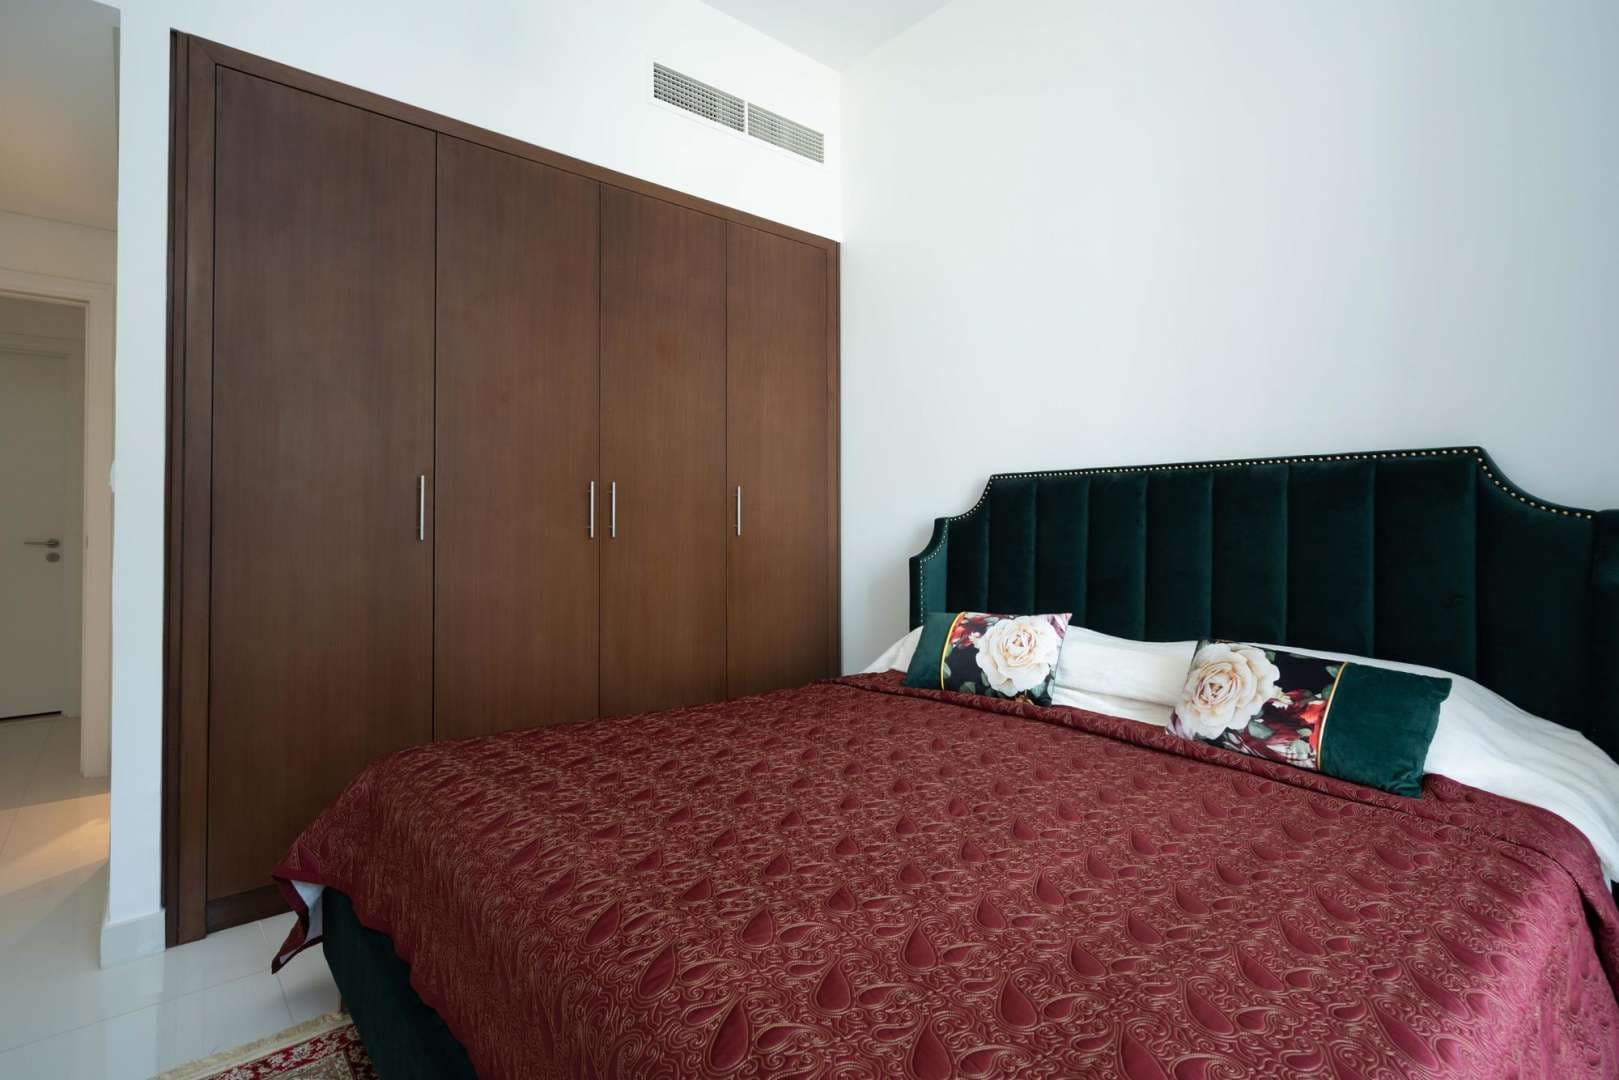 1 Bedroom Apartment For Rent Boulevard Crescent Lp05059 620b51e0f892b80.jpg